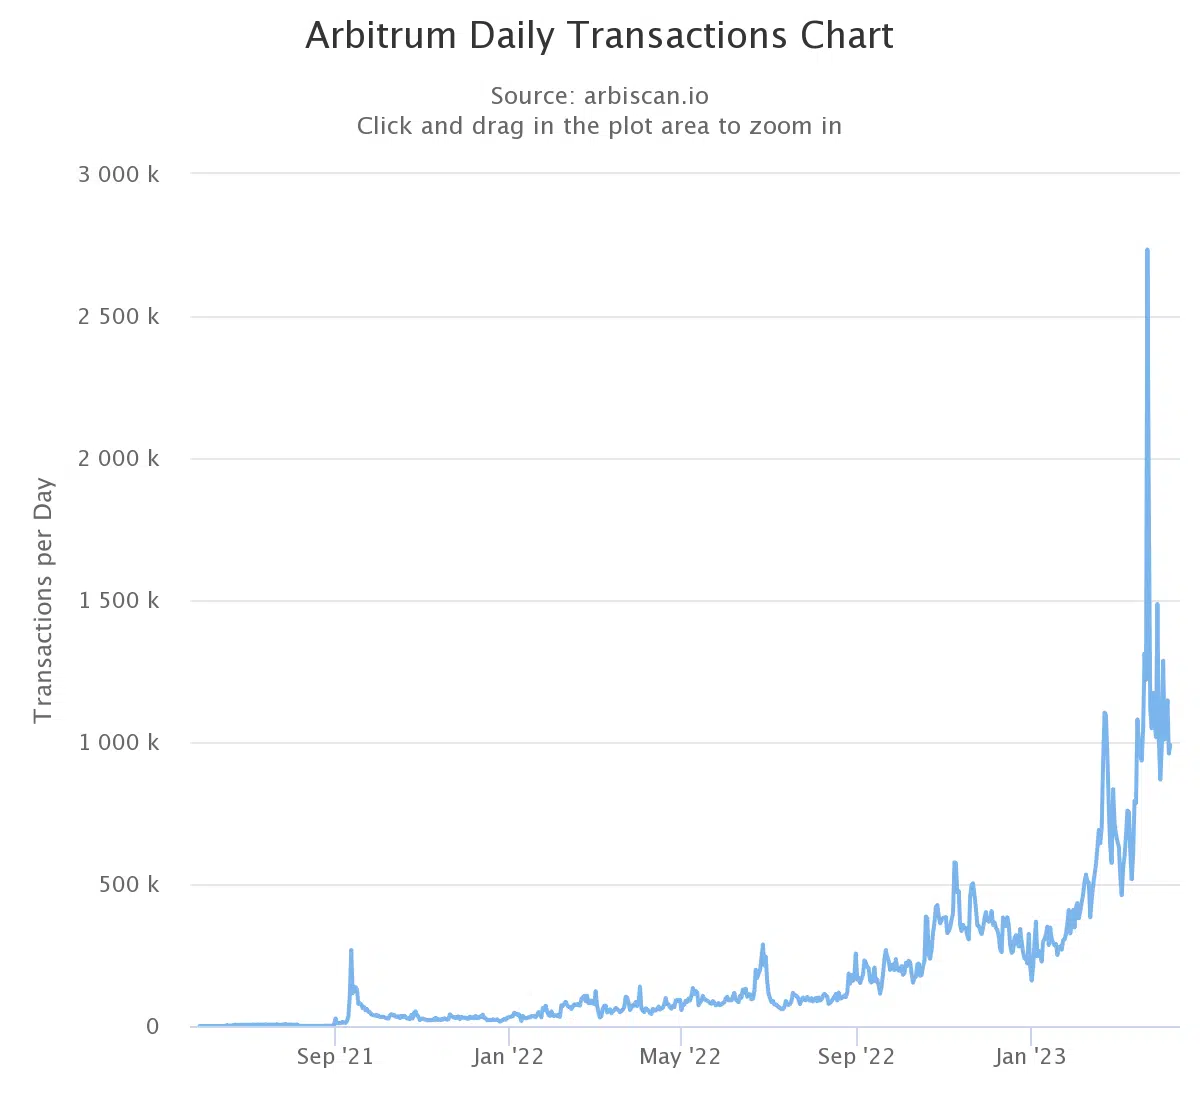 Arbitrum daily transaction count